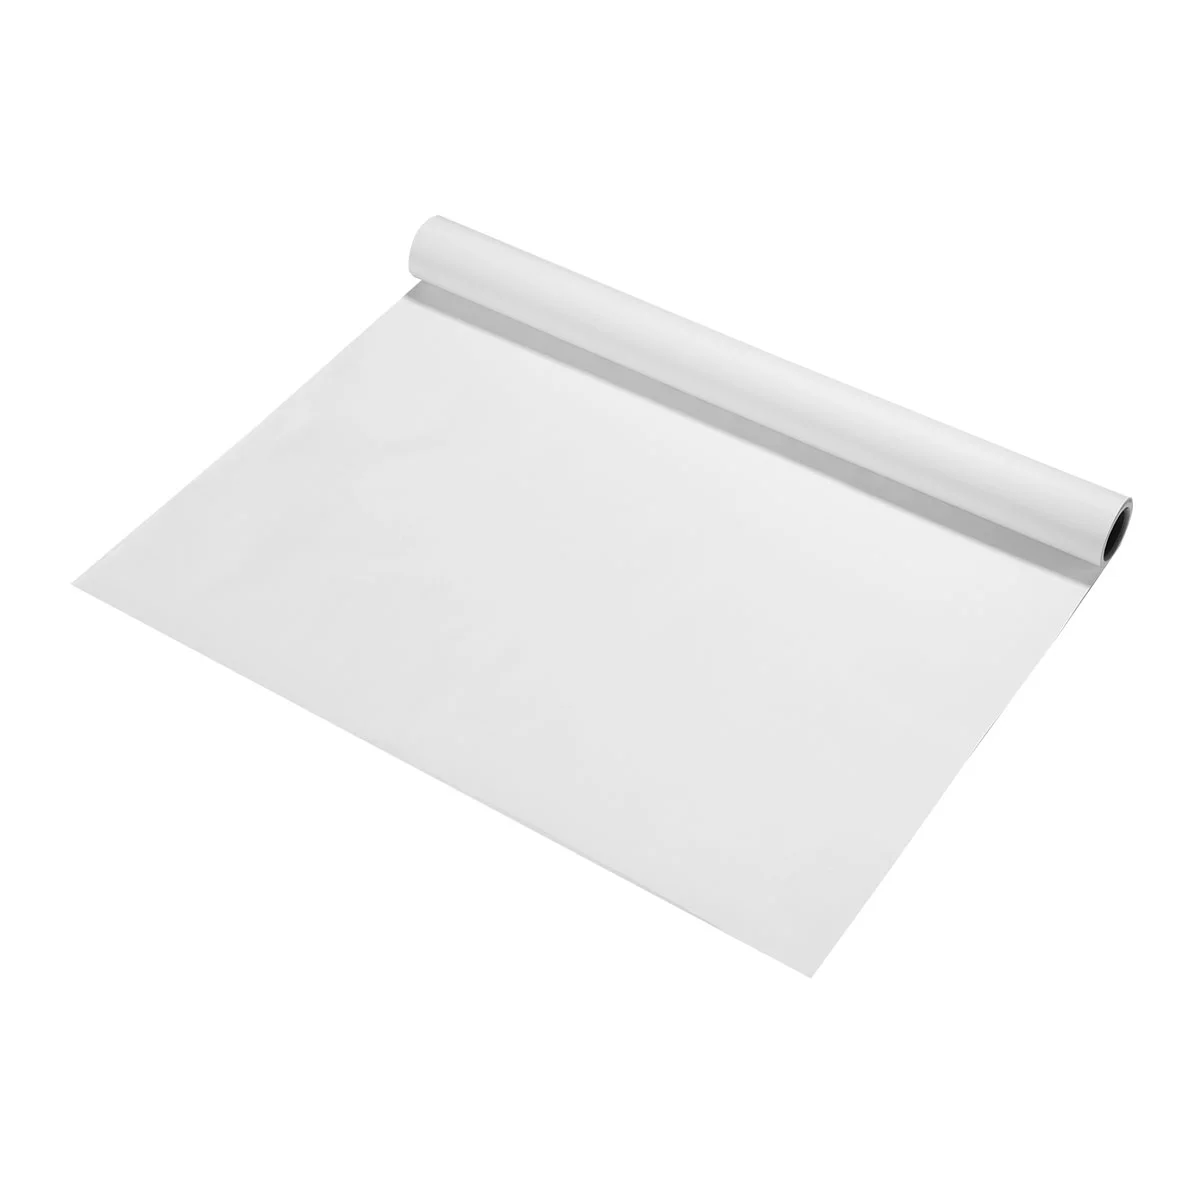 

Бумажная бумага для рисования Toyota, бумажная бумага для рукоделия, рулон белой упаковочной бумаги для рисования (белая)